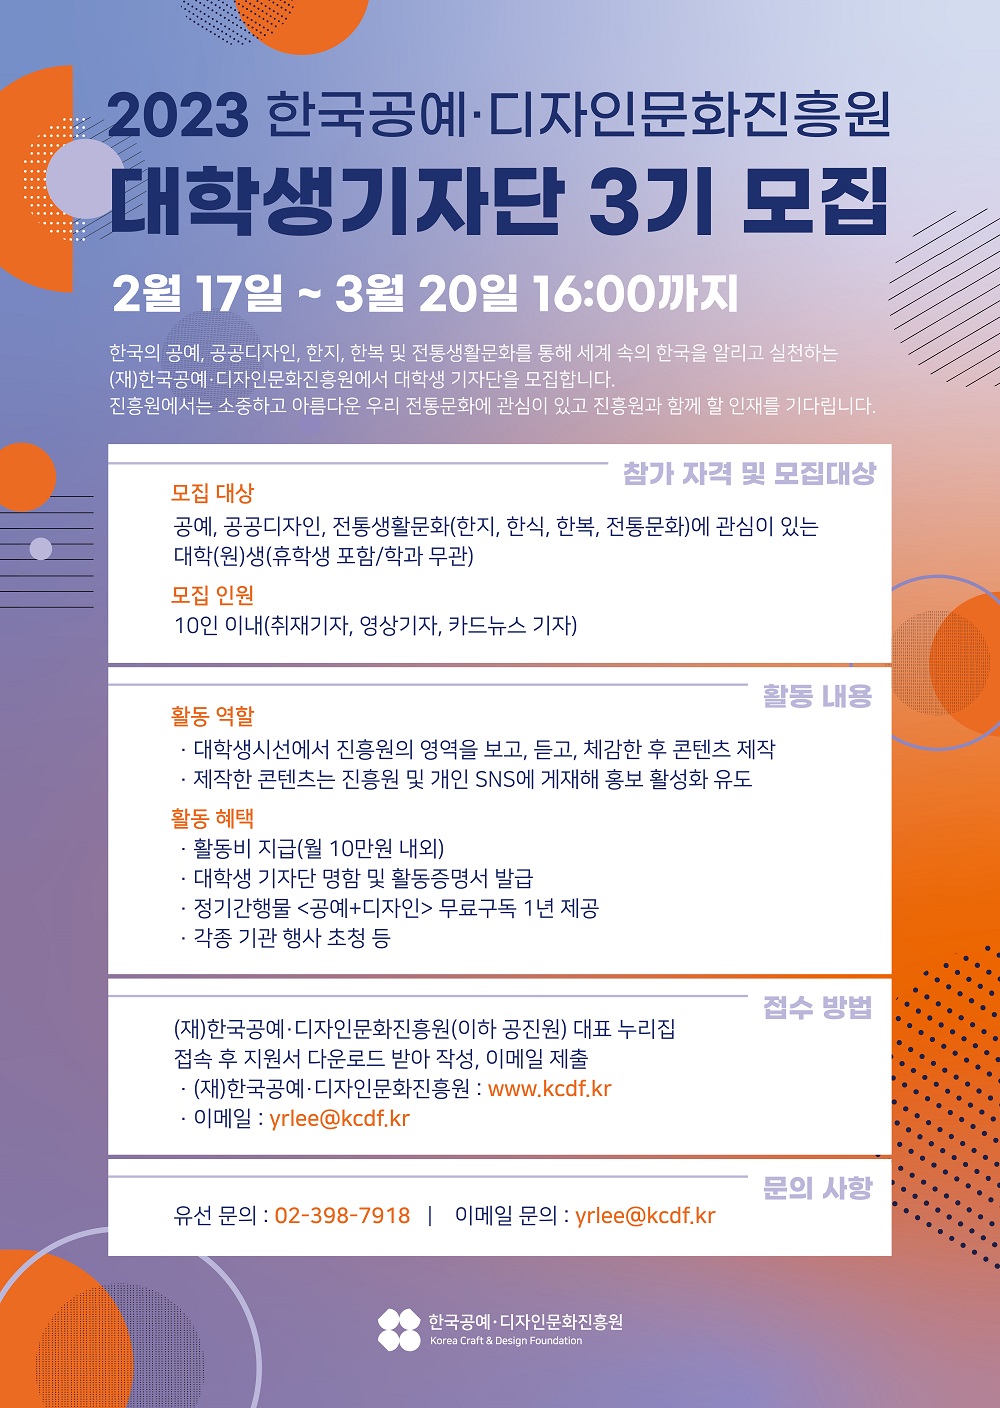 (재)한국공예디자인문화진흥원 2023 대학생기자단 3기 모집